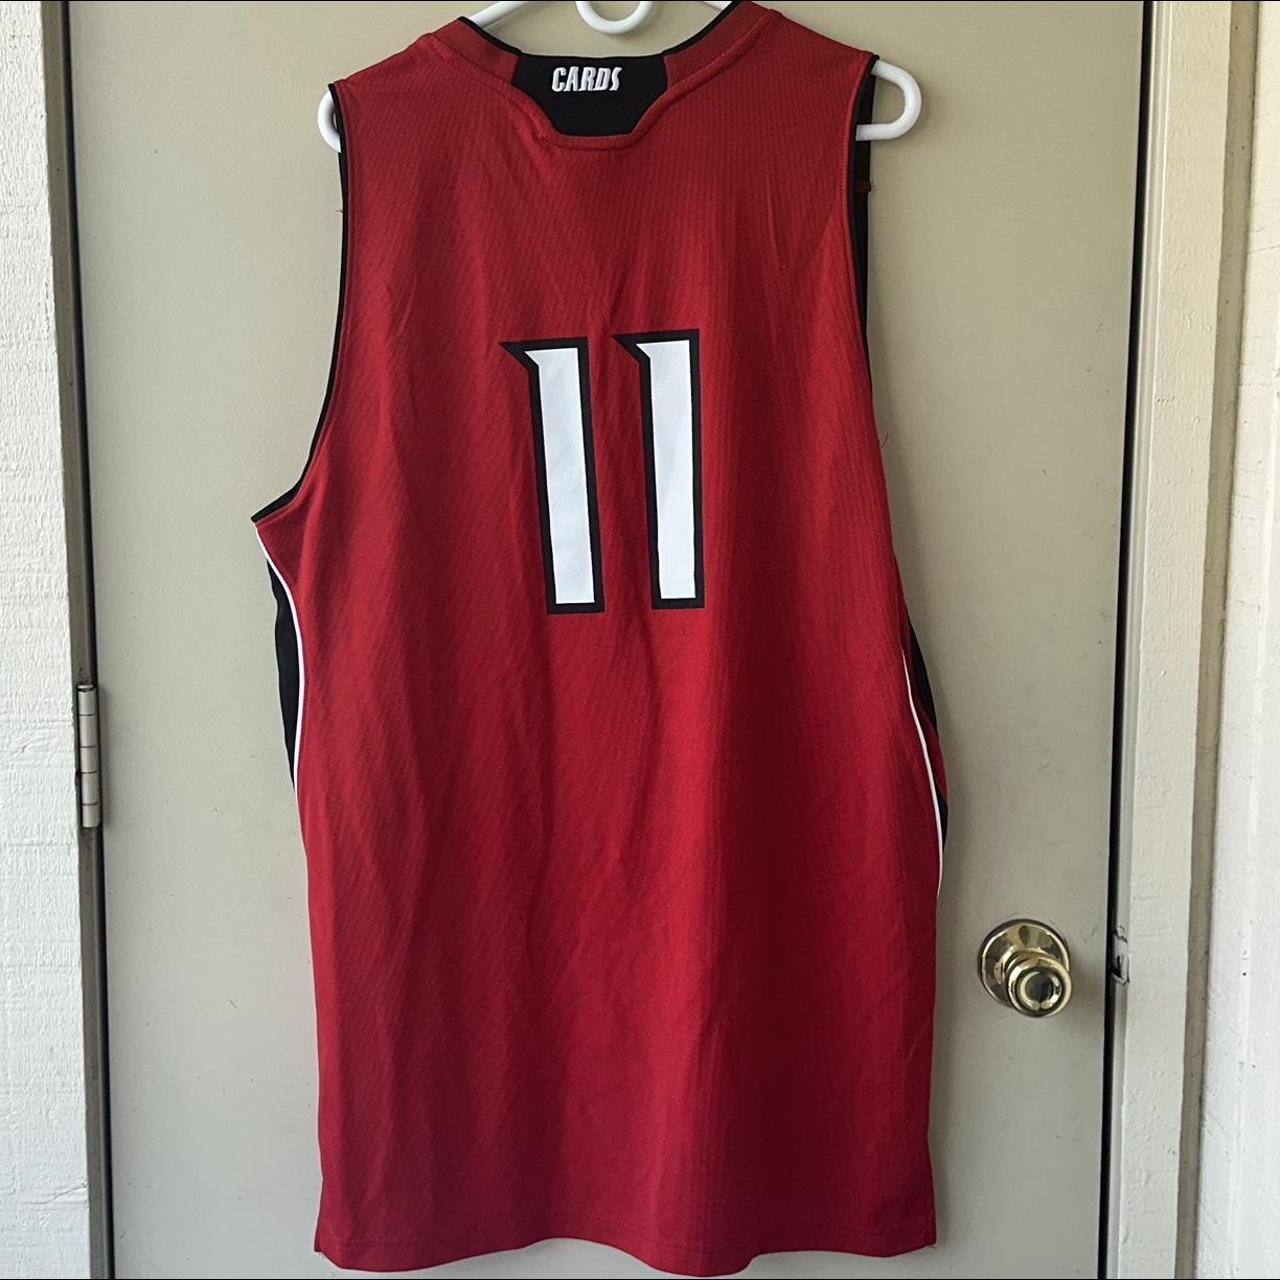 Louisville Cardinals Basketball Jersey Size M Kids - Depop